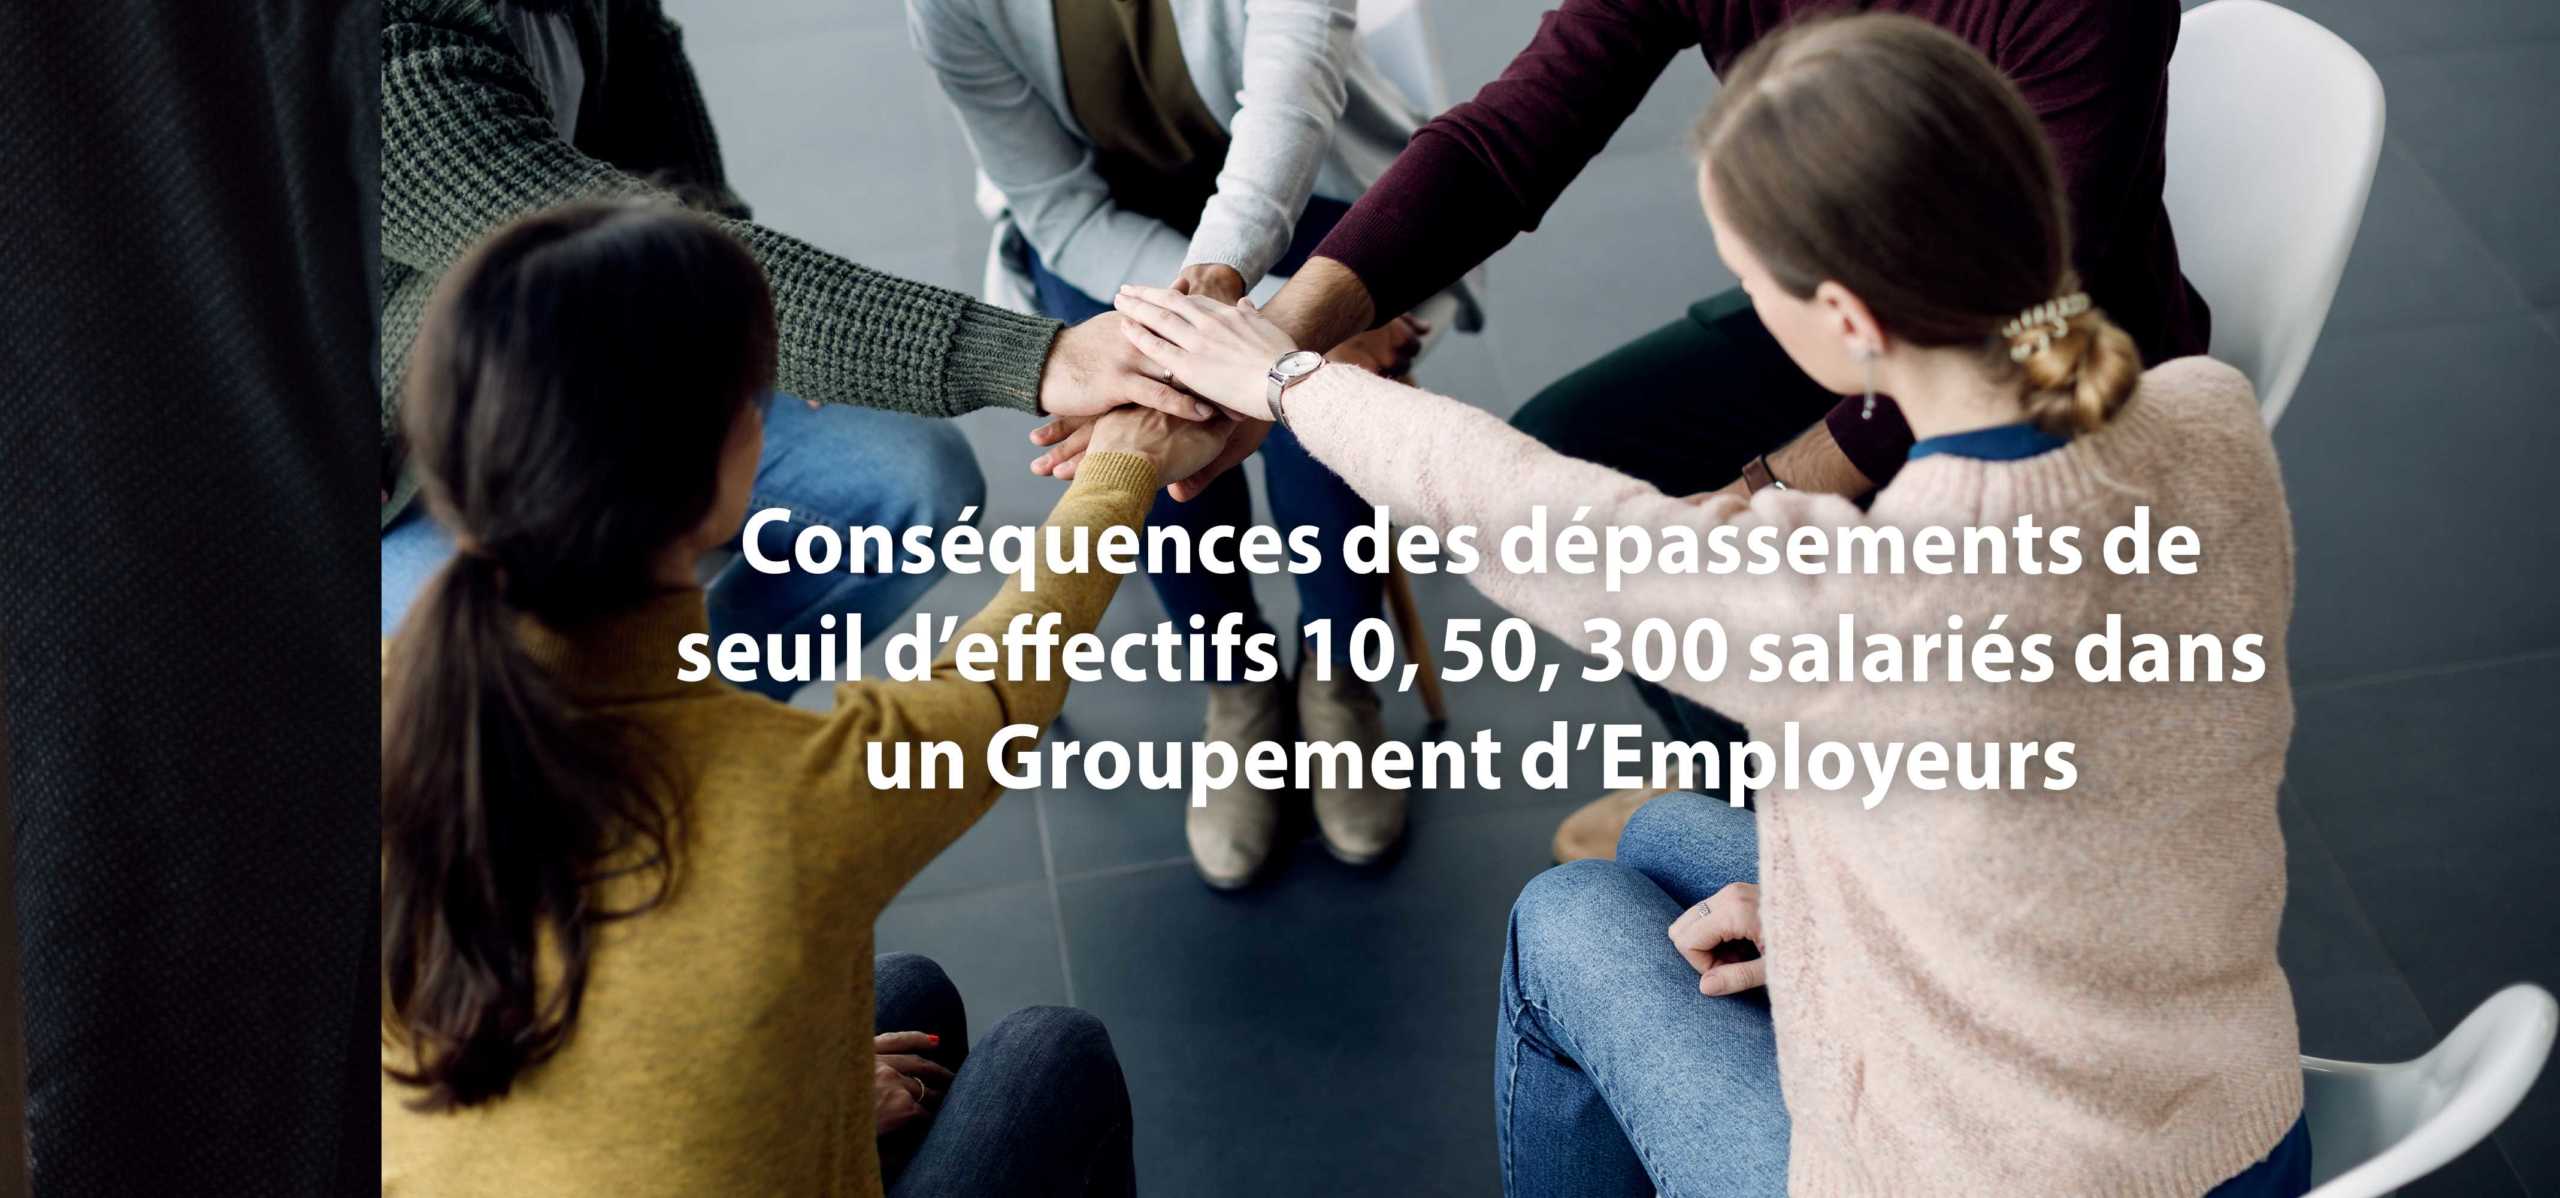 Conséquences des dépassements de seuil d’effectifs 10, 50, 300 salariés dans un Groupement d’Employeurs